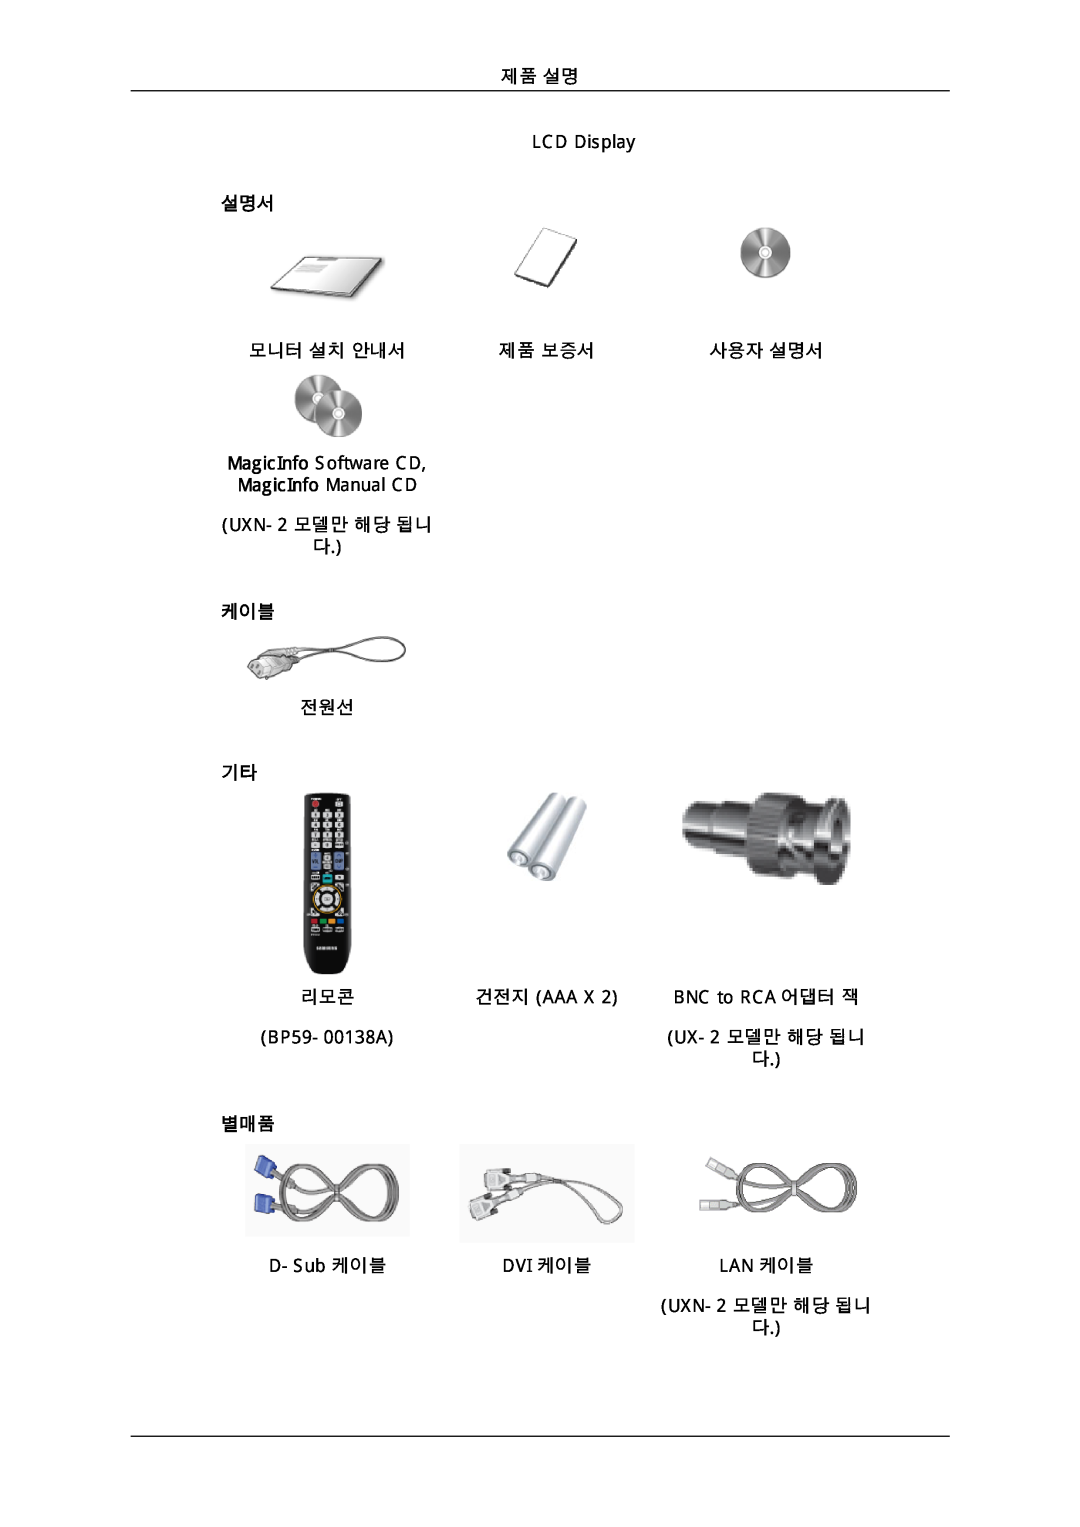 Samsung 725D quick start MagicInfo Manual CD 